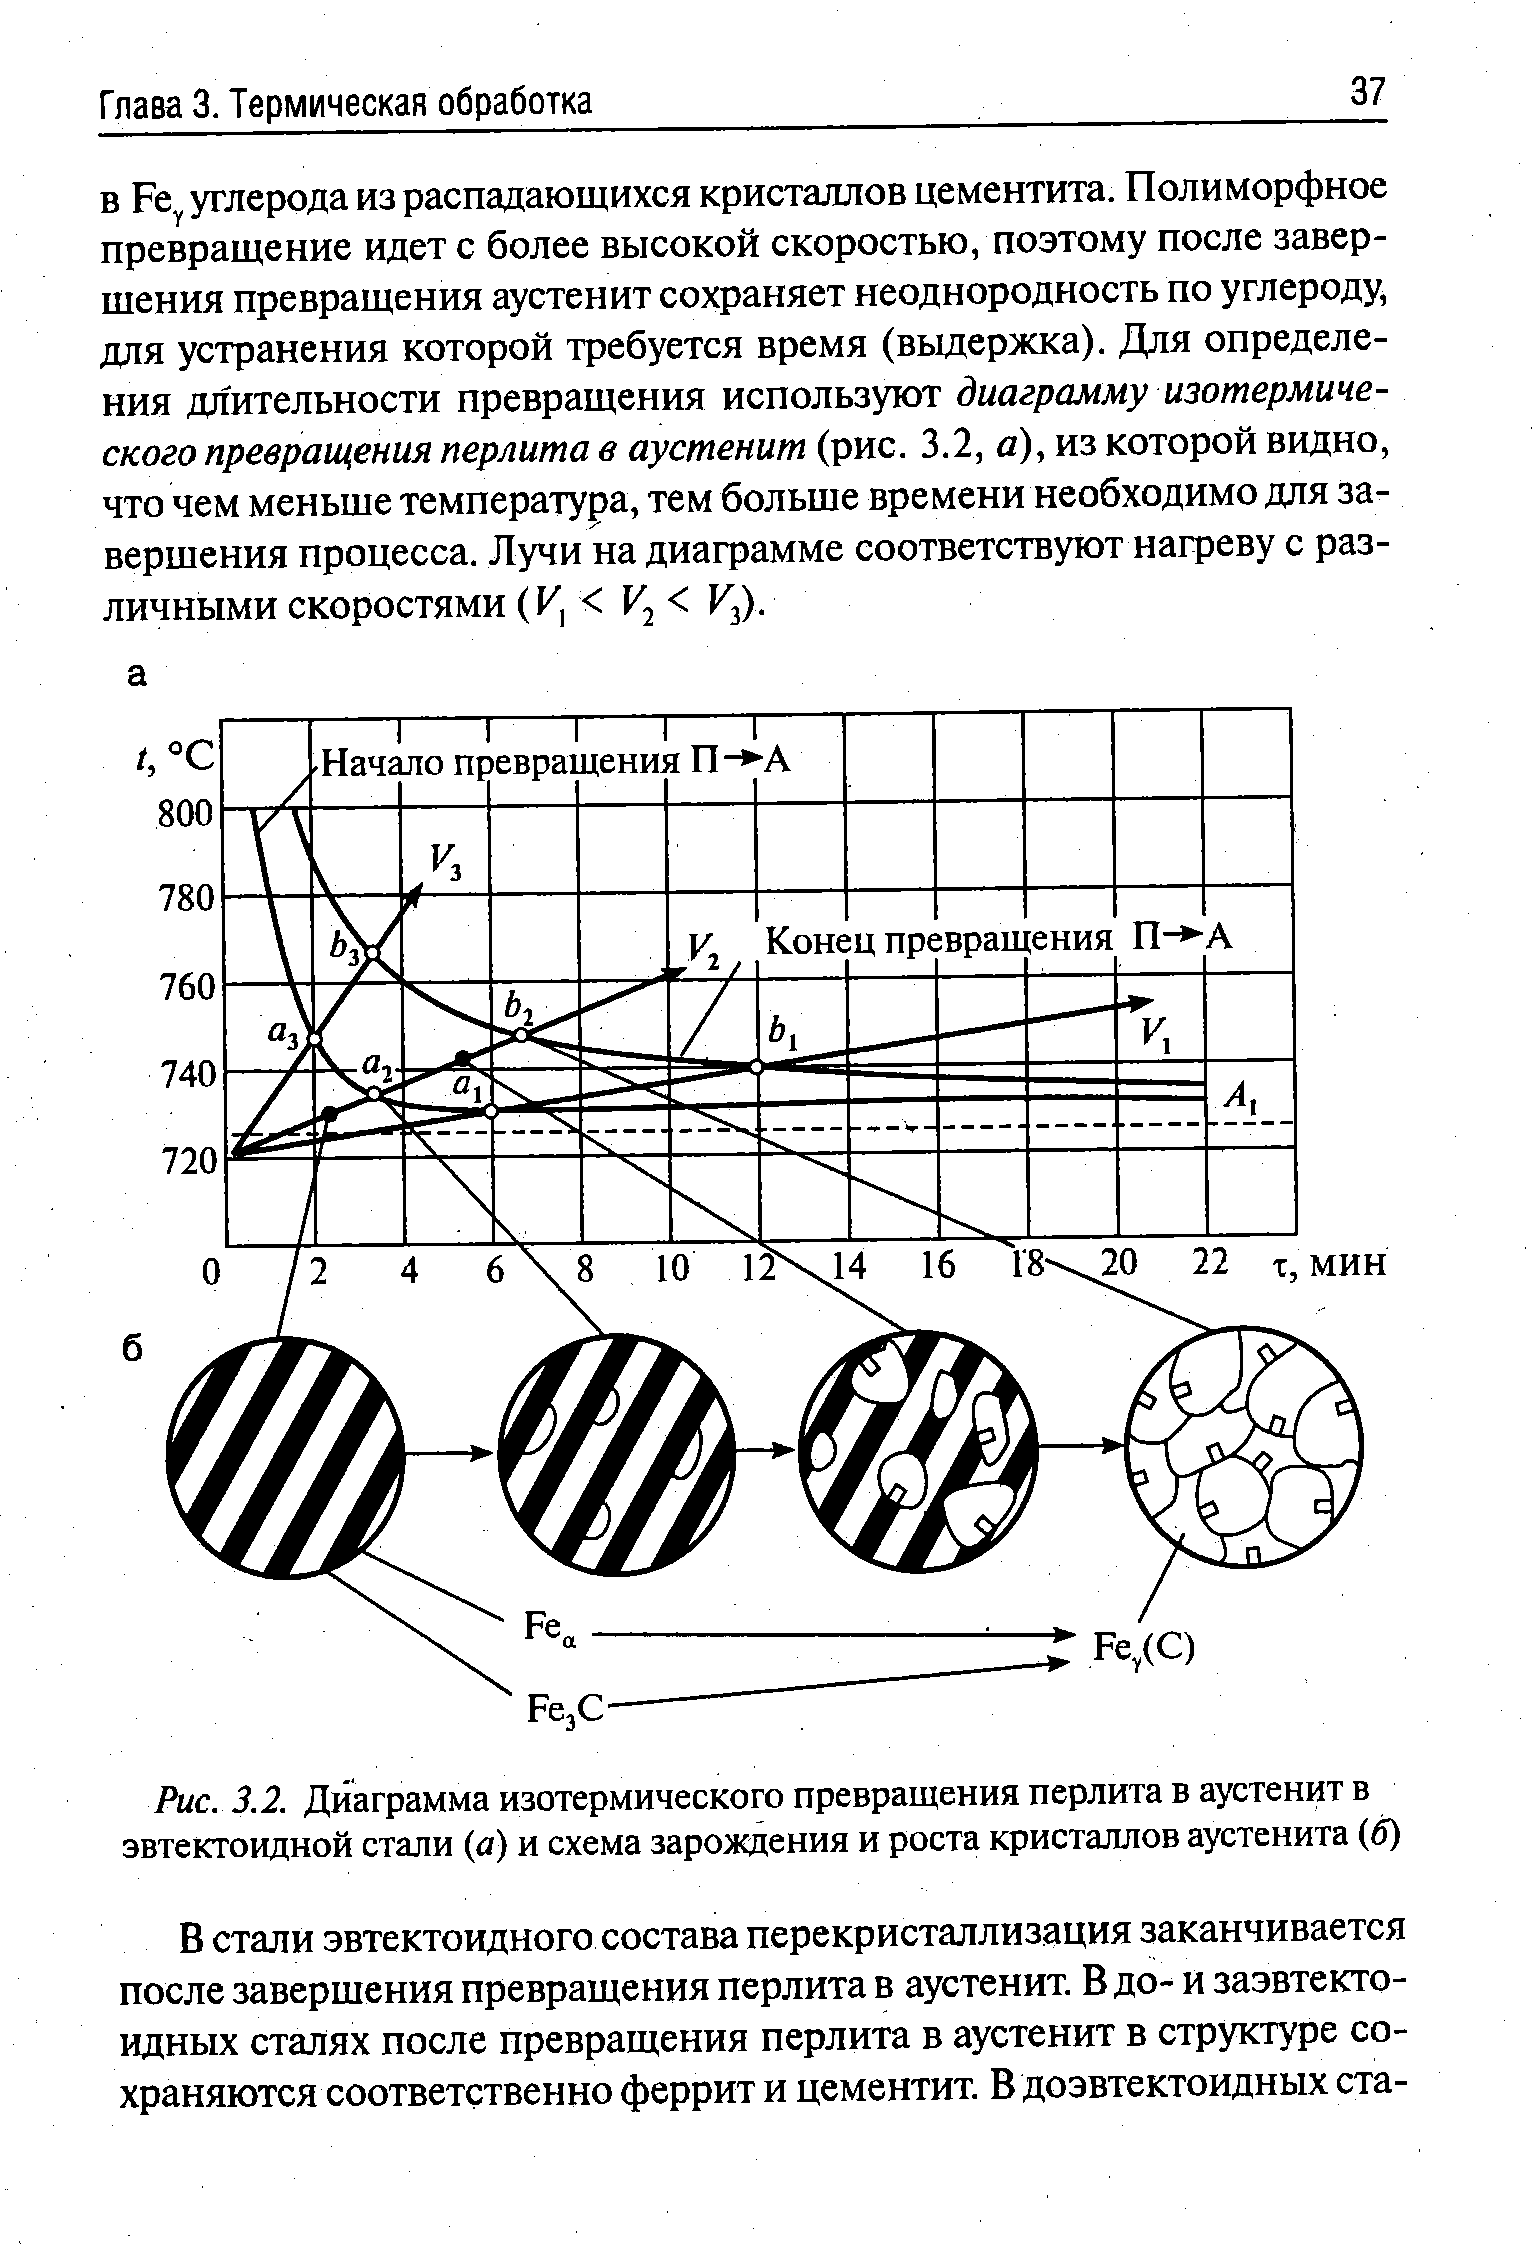 Рис. 3.2. Диаграмма изотермического превращения перлита в аустенит в эвтектоидной стали (а) и схема зарождения и роста кристаллов аустенита (б)
